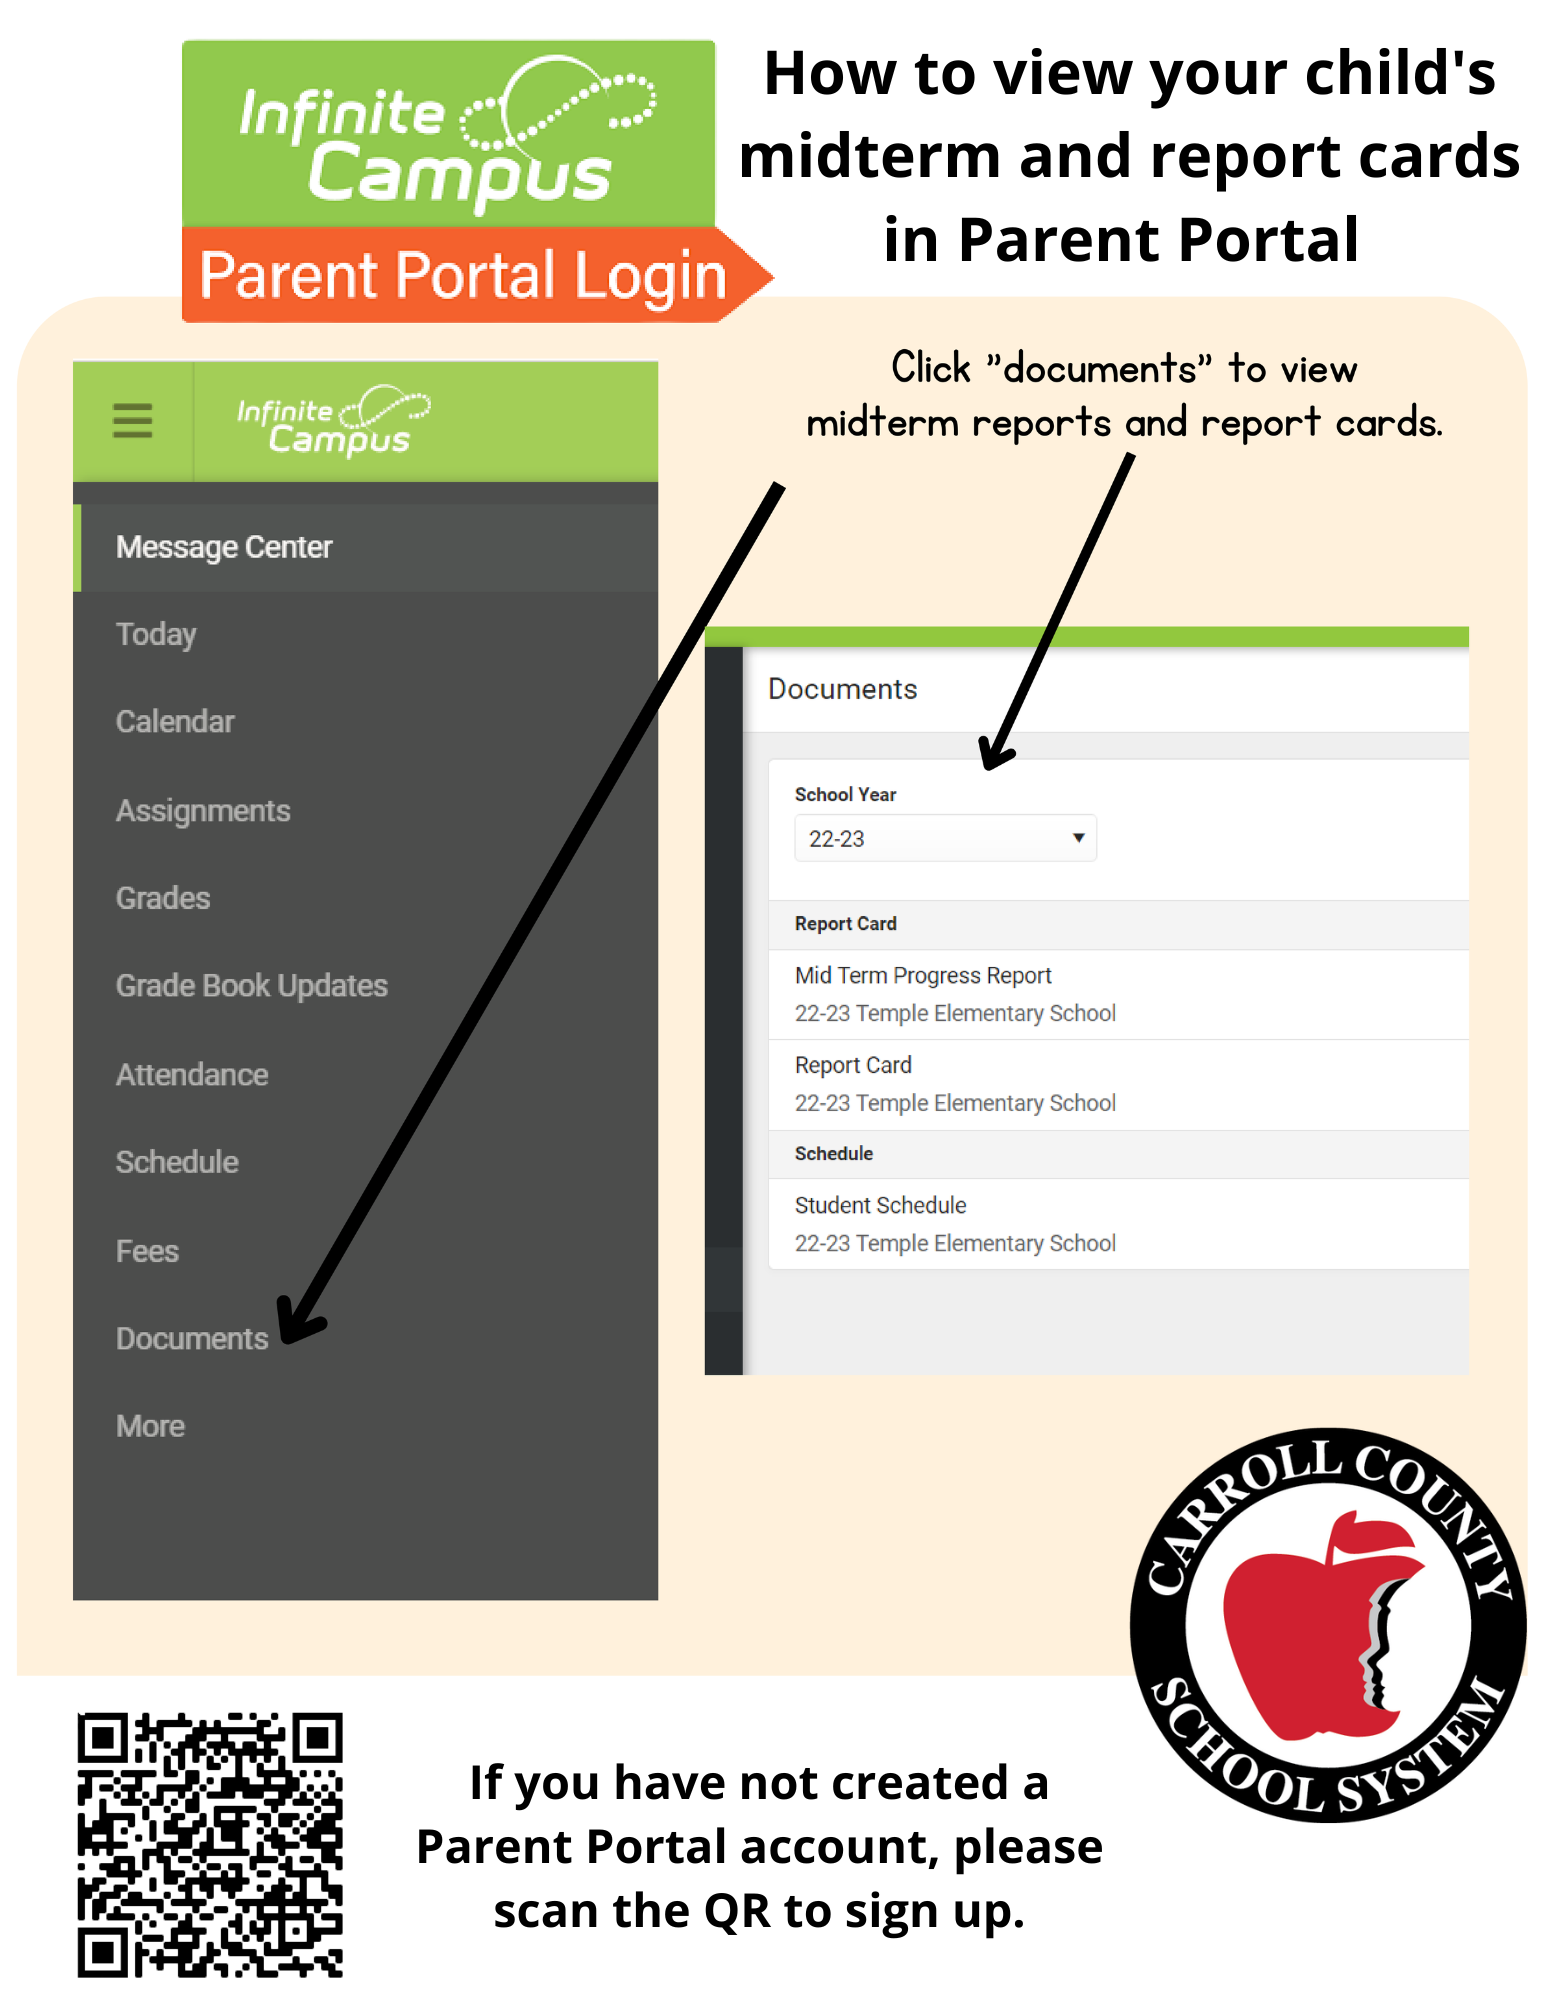 Infinite Campus parent portal login